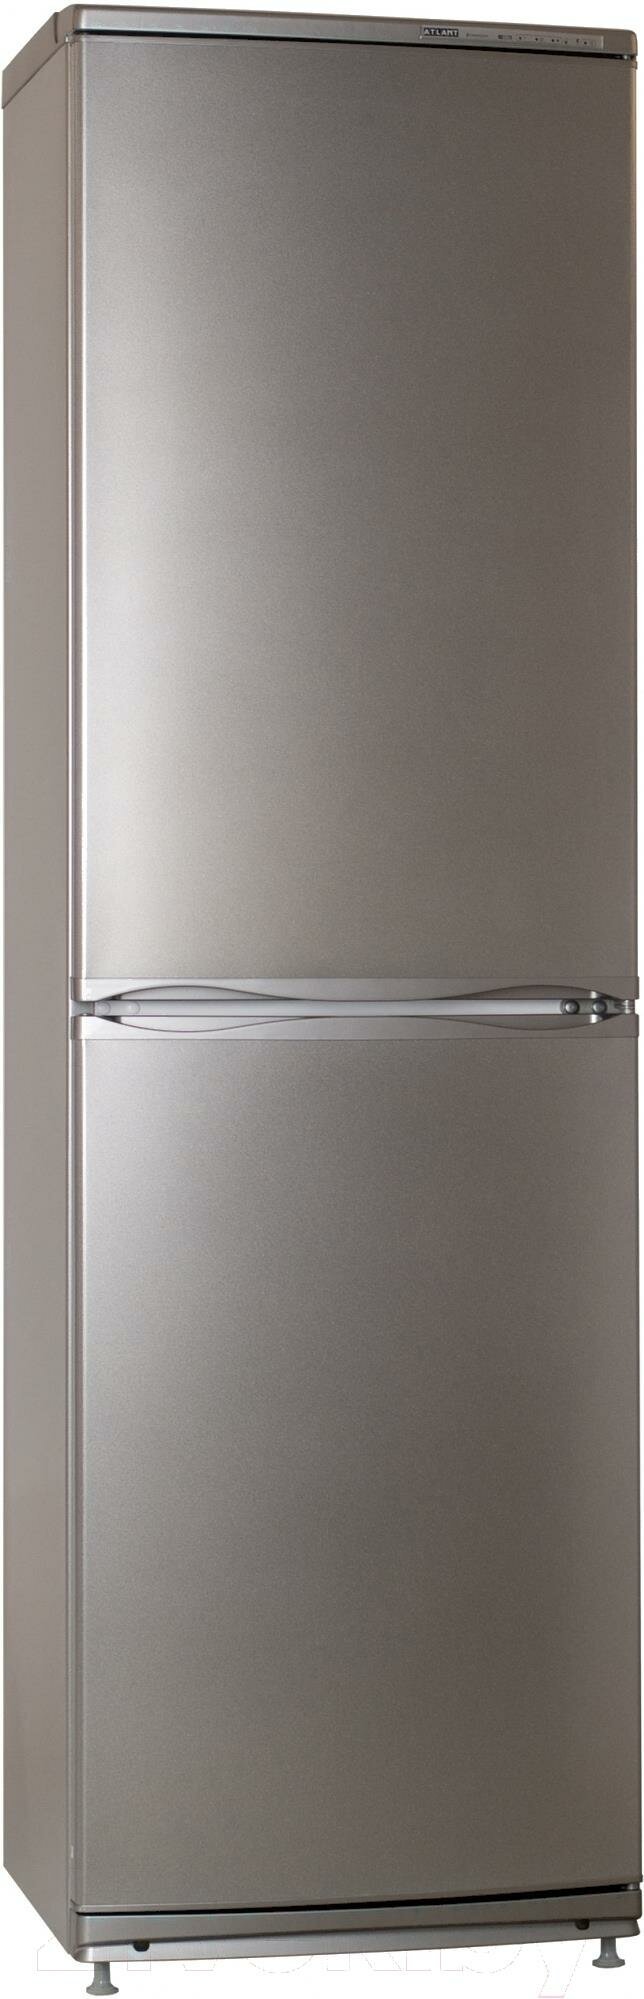 Холодильник с нижней морозильной камерой Атлант - фото №4